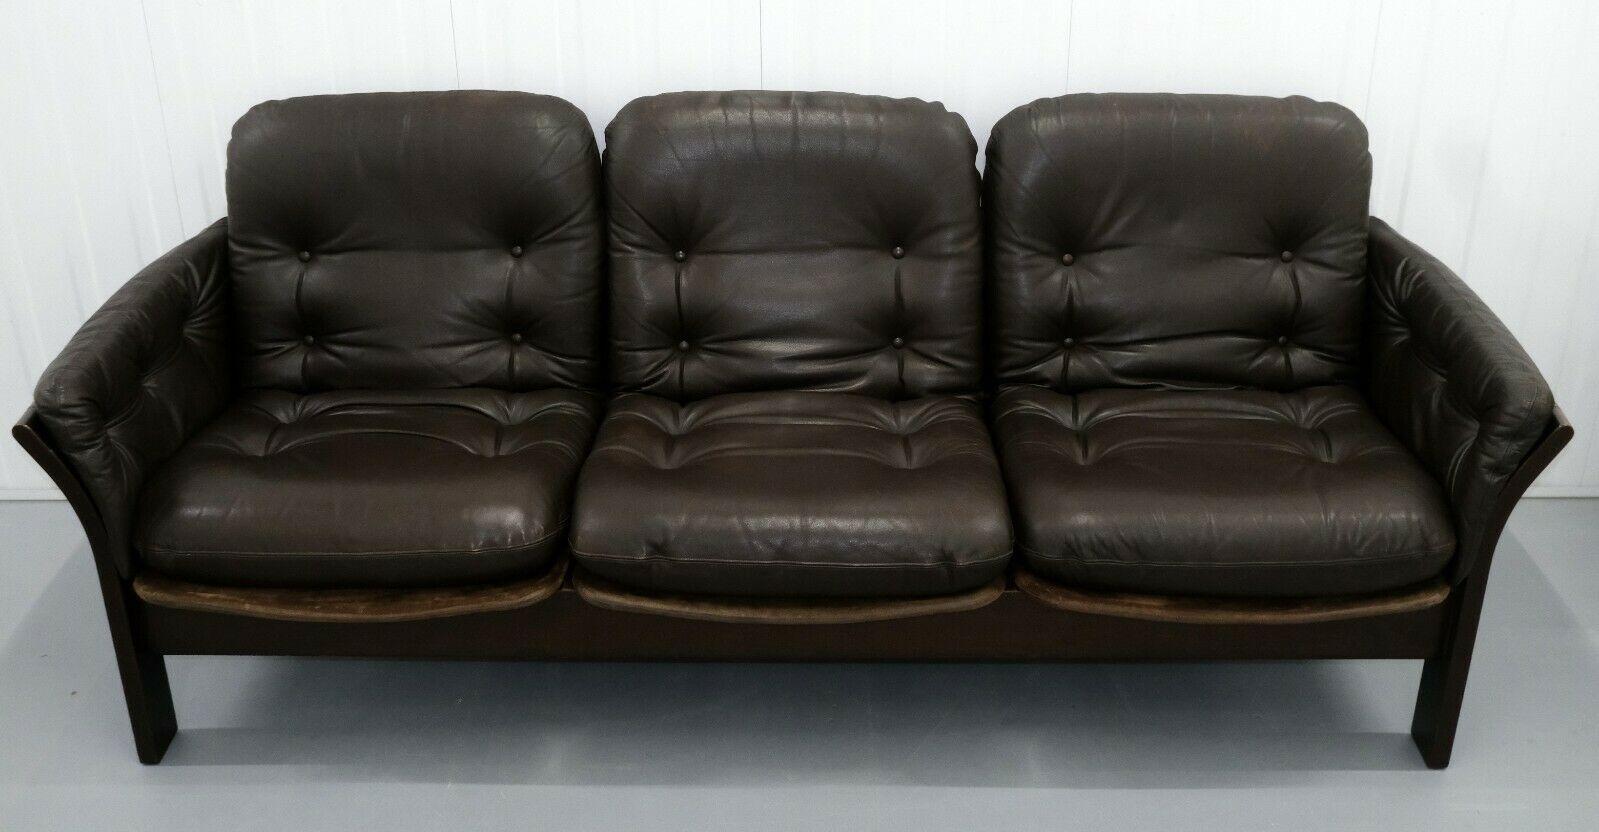 Nous sommes ravis de proposer à la vente ce confortable canapé trois places en cuir marron foncé des années 1970, fabriqué par Thams Kvalitet.

Il s'agit d'un canapé magnifique et élégant, fabriqué avec du cuir marron souple et du daim sur les